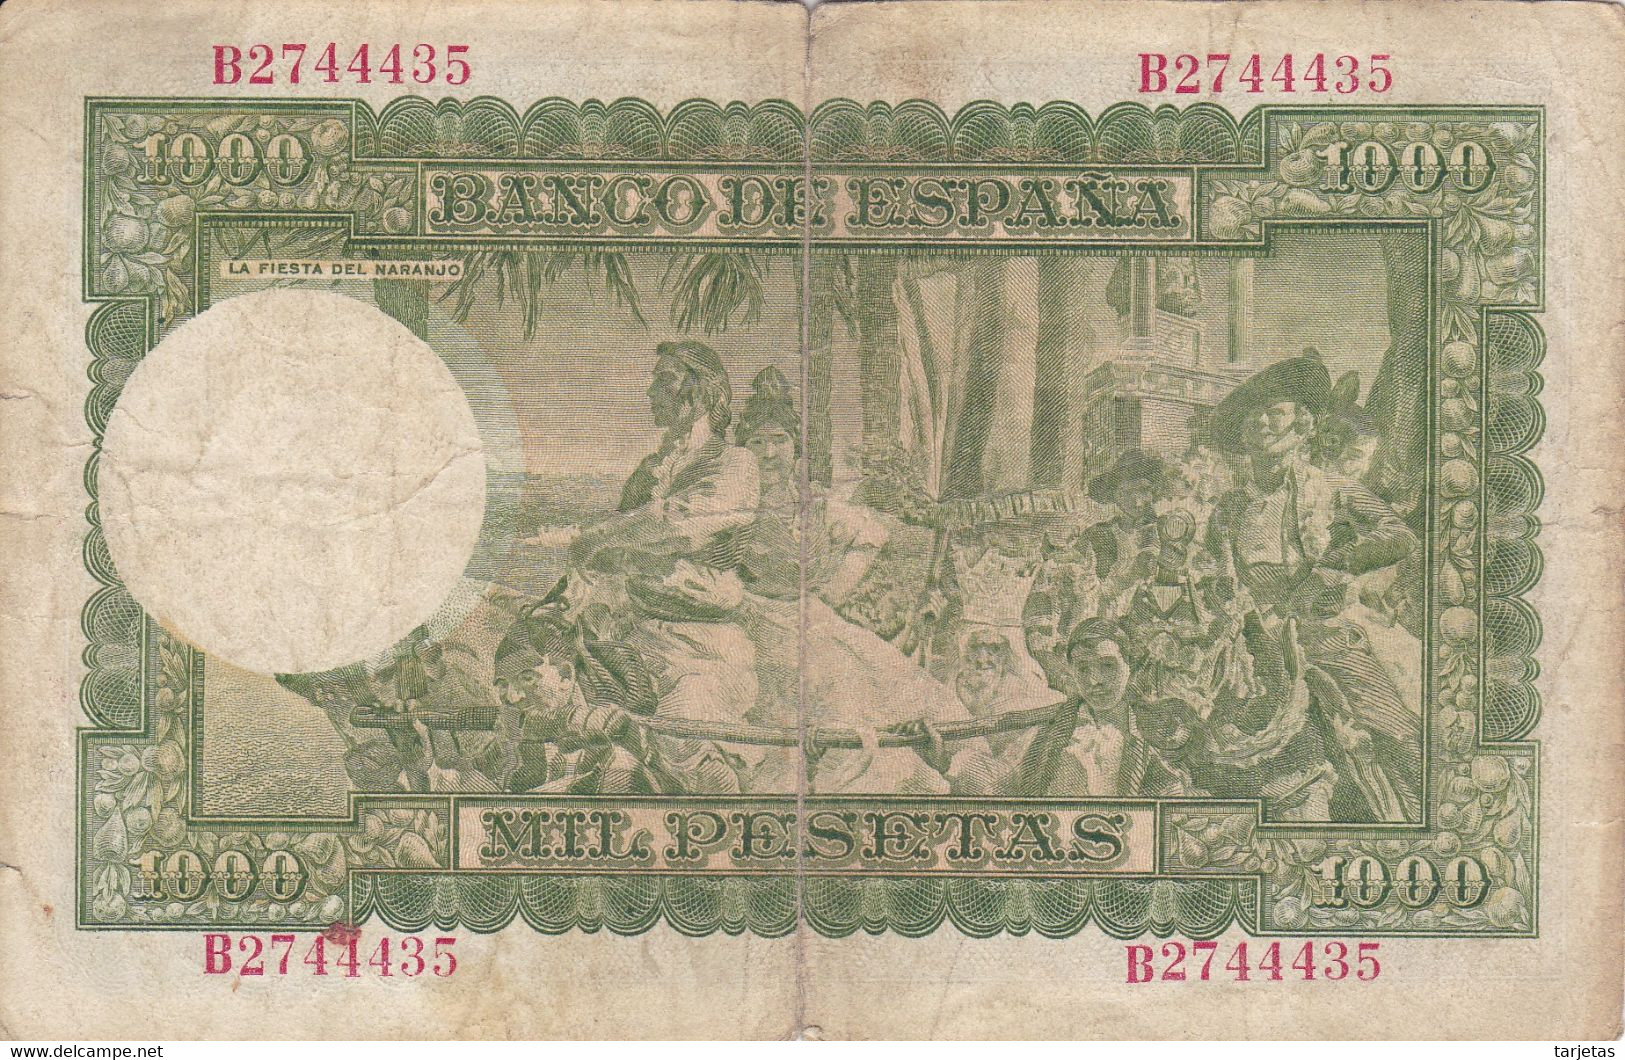 BILLETE DE ESPAÑA DE 1000 PTAS DEL 31/12/1951 SERIE B (BANKNOTE) - 1000 Pesetas